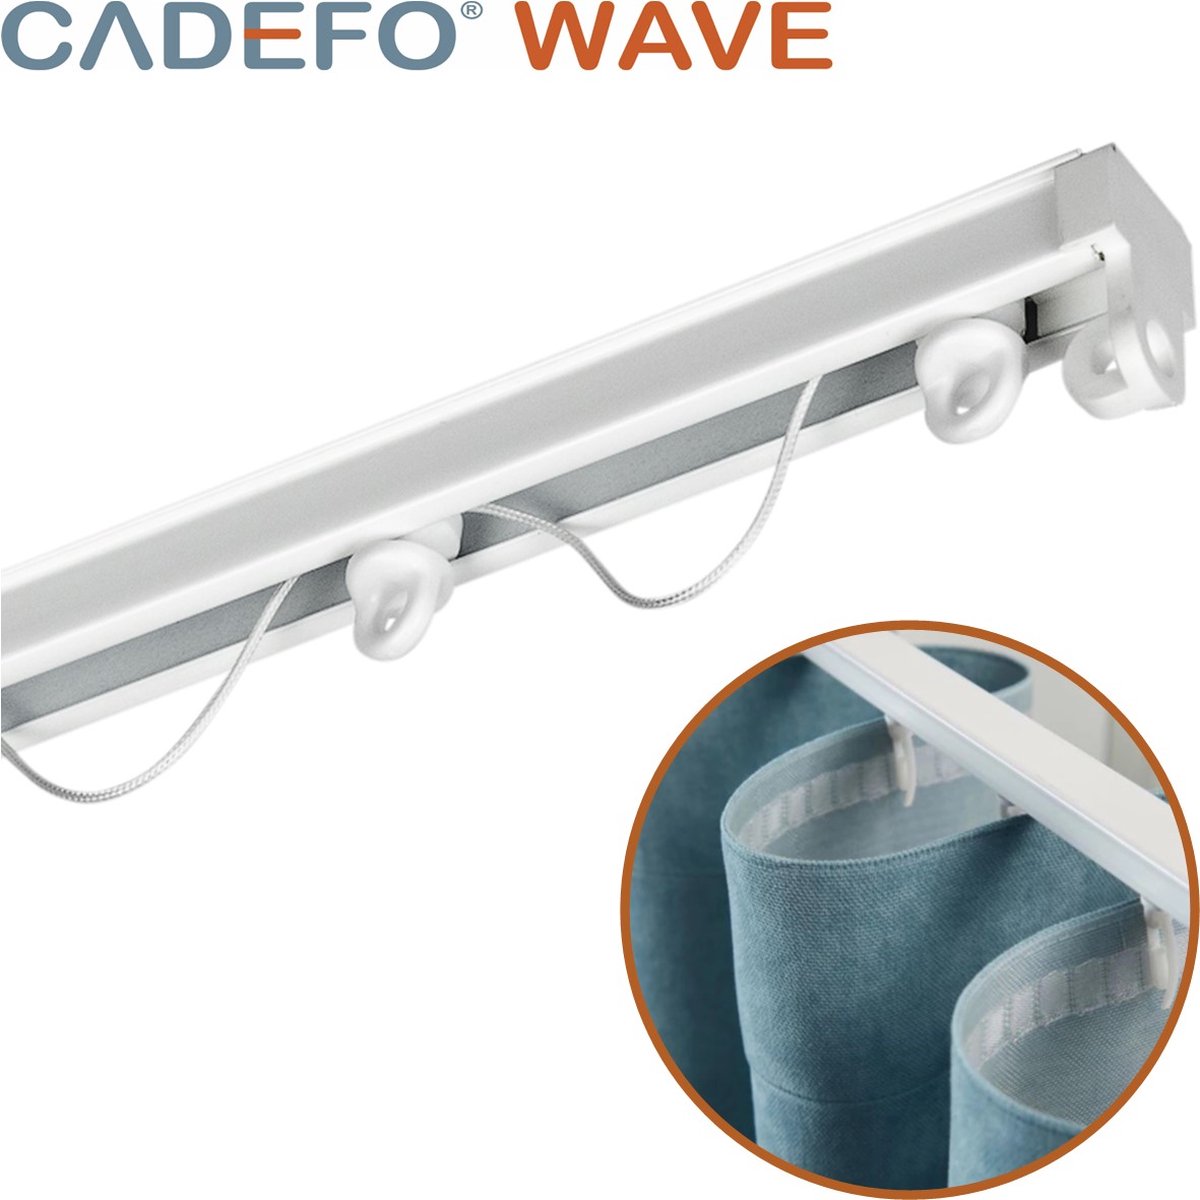 CADEFO WAVE (151 - 200 cm) Gordijnrails - Compleet op maat! - UIT 1 STUK - Leverbaar tot 6 meter - Plafondbevestiging - Lengte 172 cm